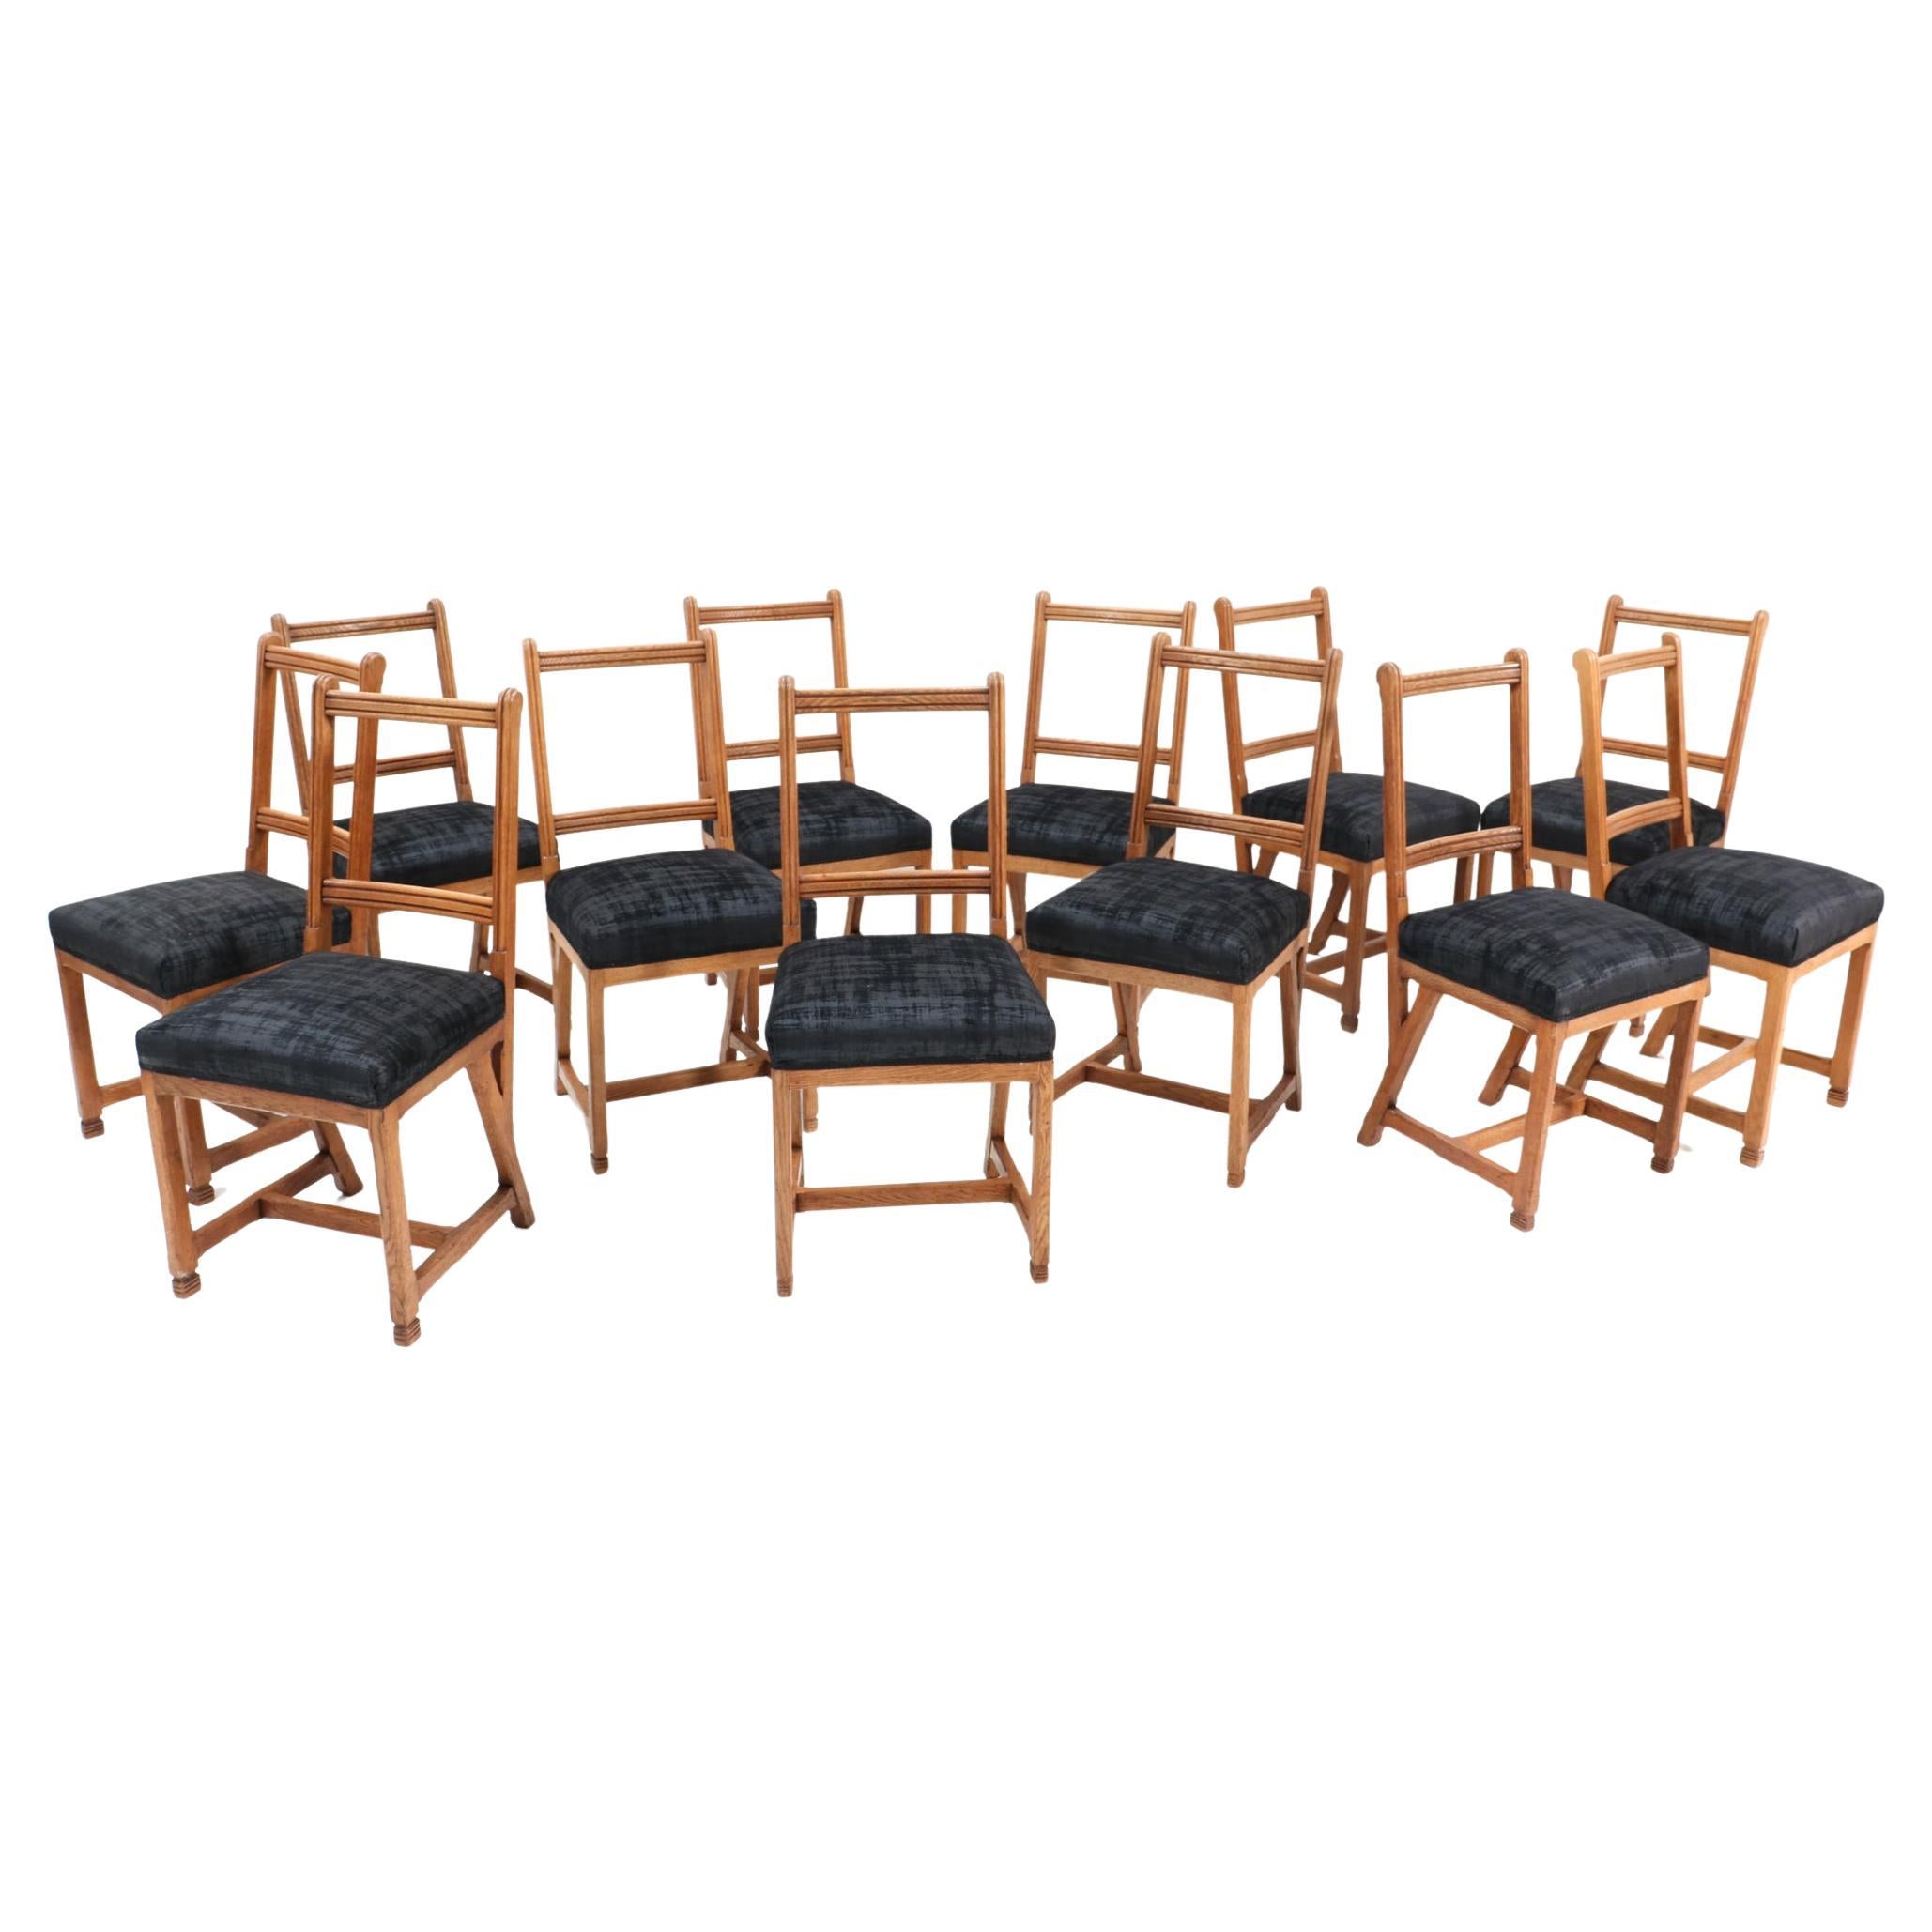 Douze chaises Arts & Crafts en chêne de Hendrik Petrus pour l'Université de Leiden